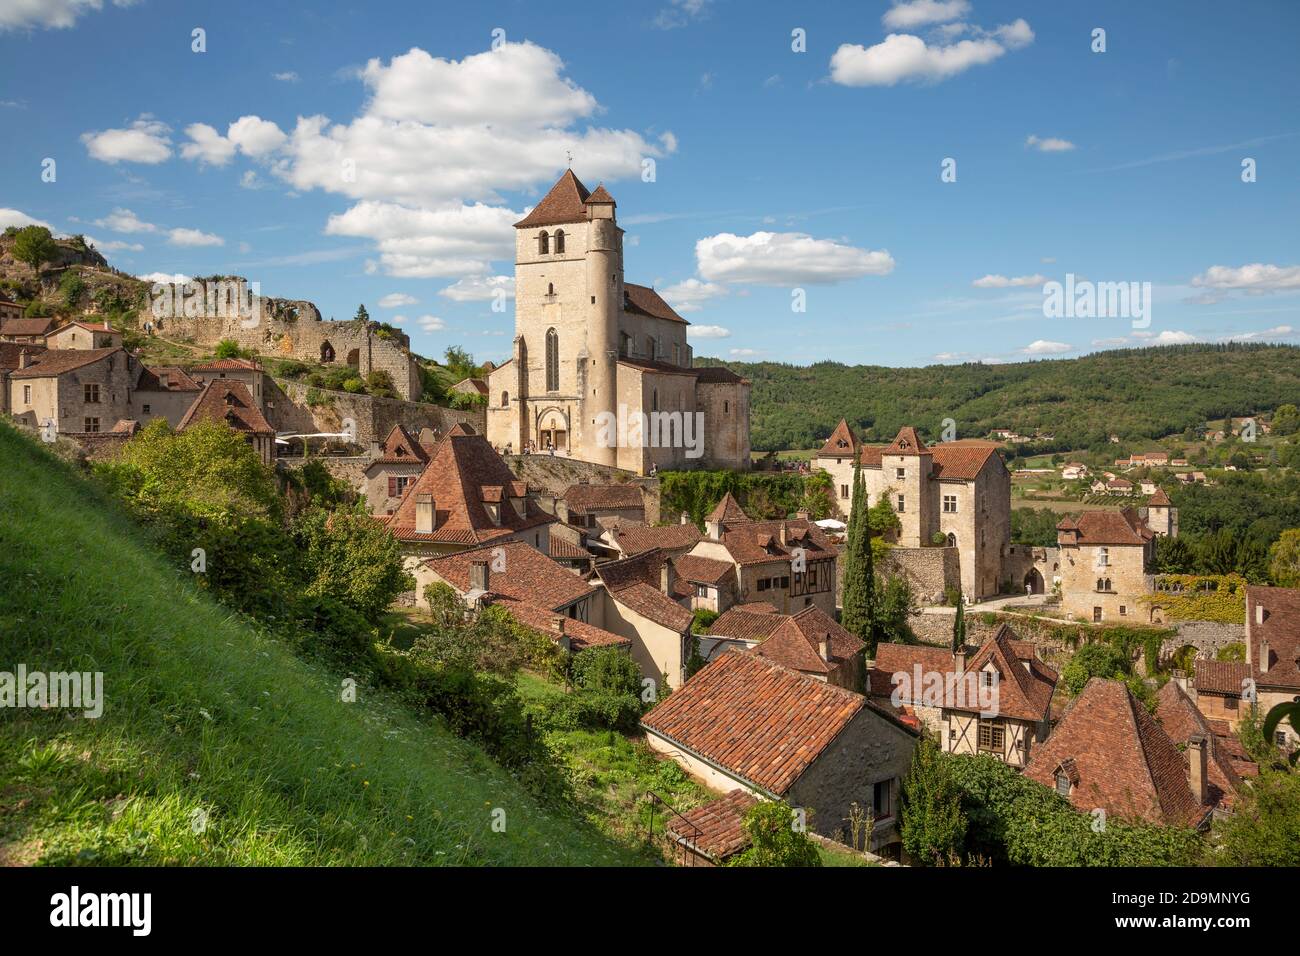 St Cirq Lapopie, situé au-dessus du Lot, a été à juste titre élu l'un des « plus beaux villages de France ». Il est très populaire auprès des visiteurs. Banque D'Images